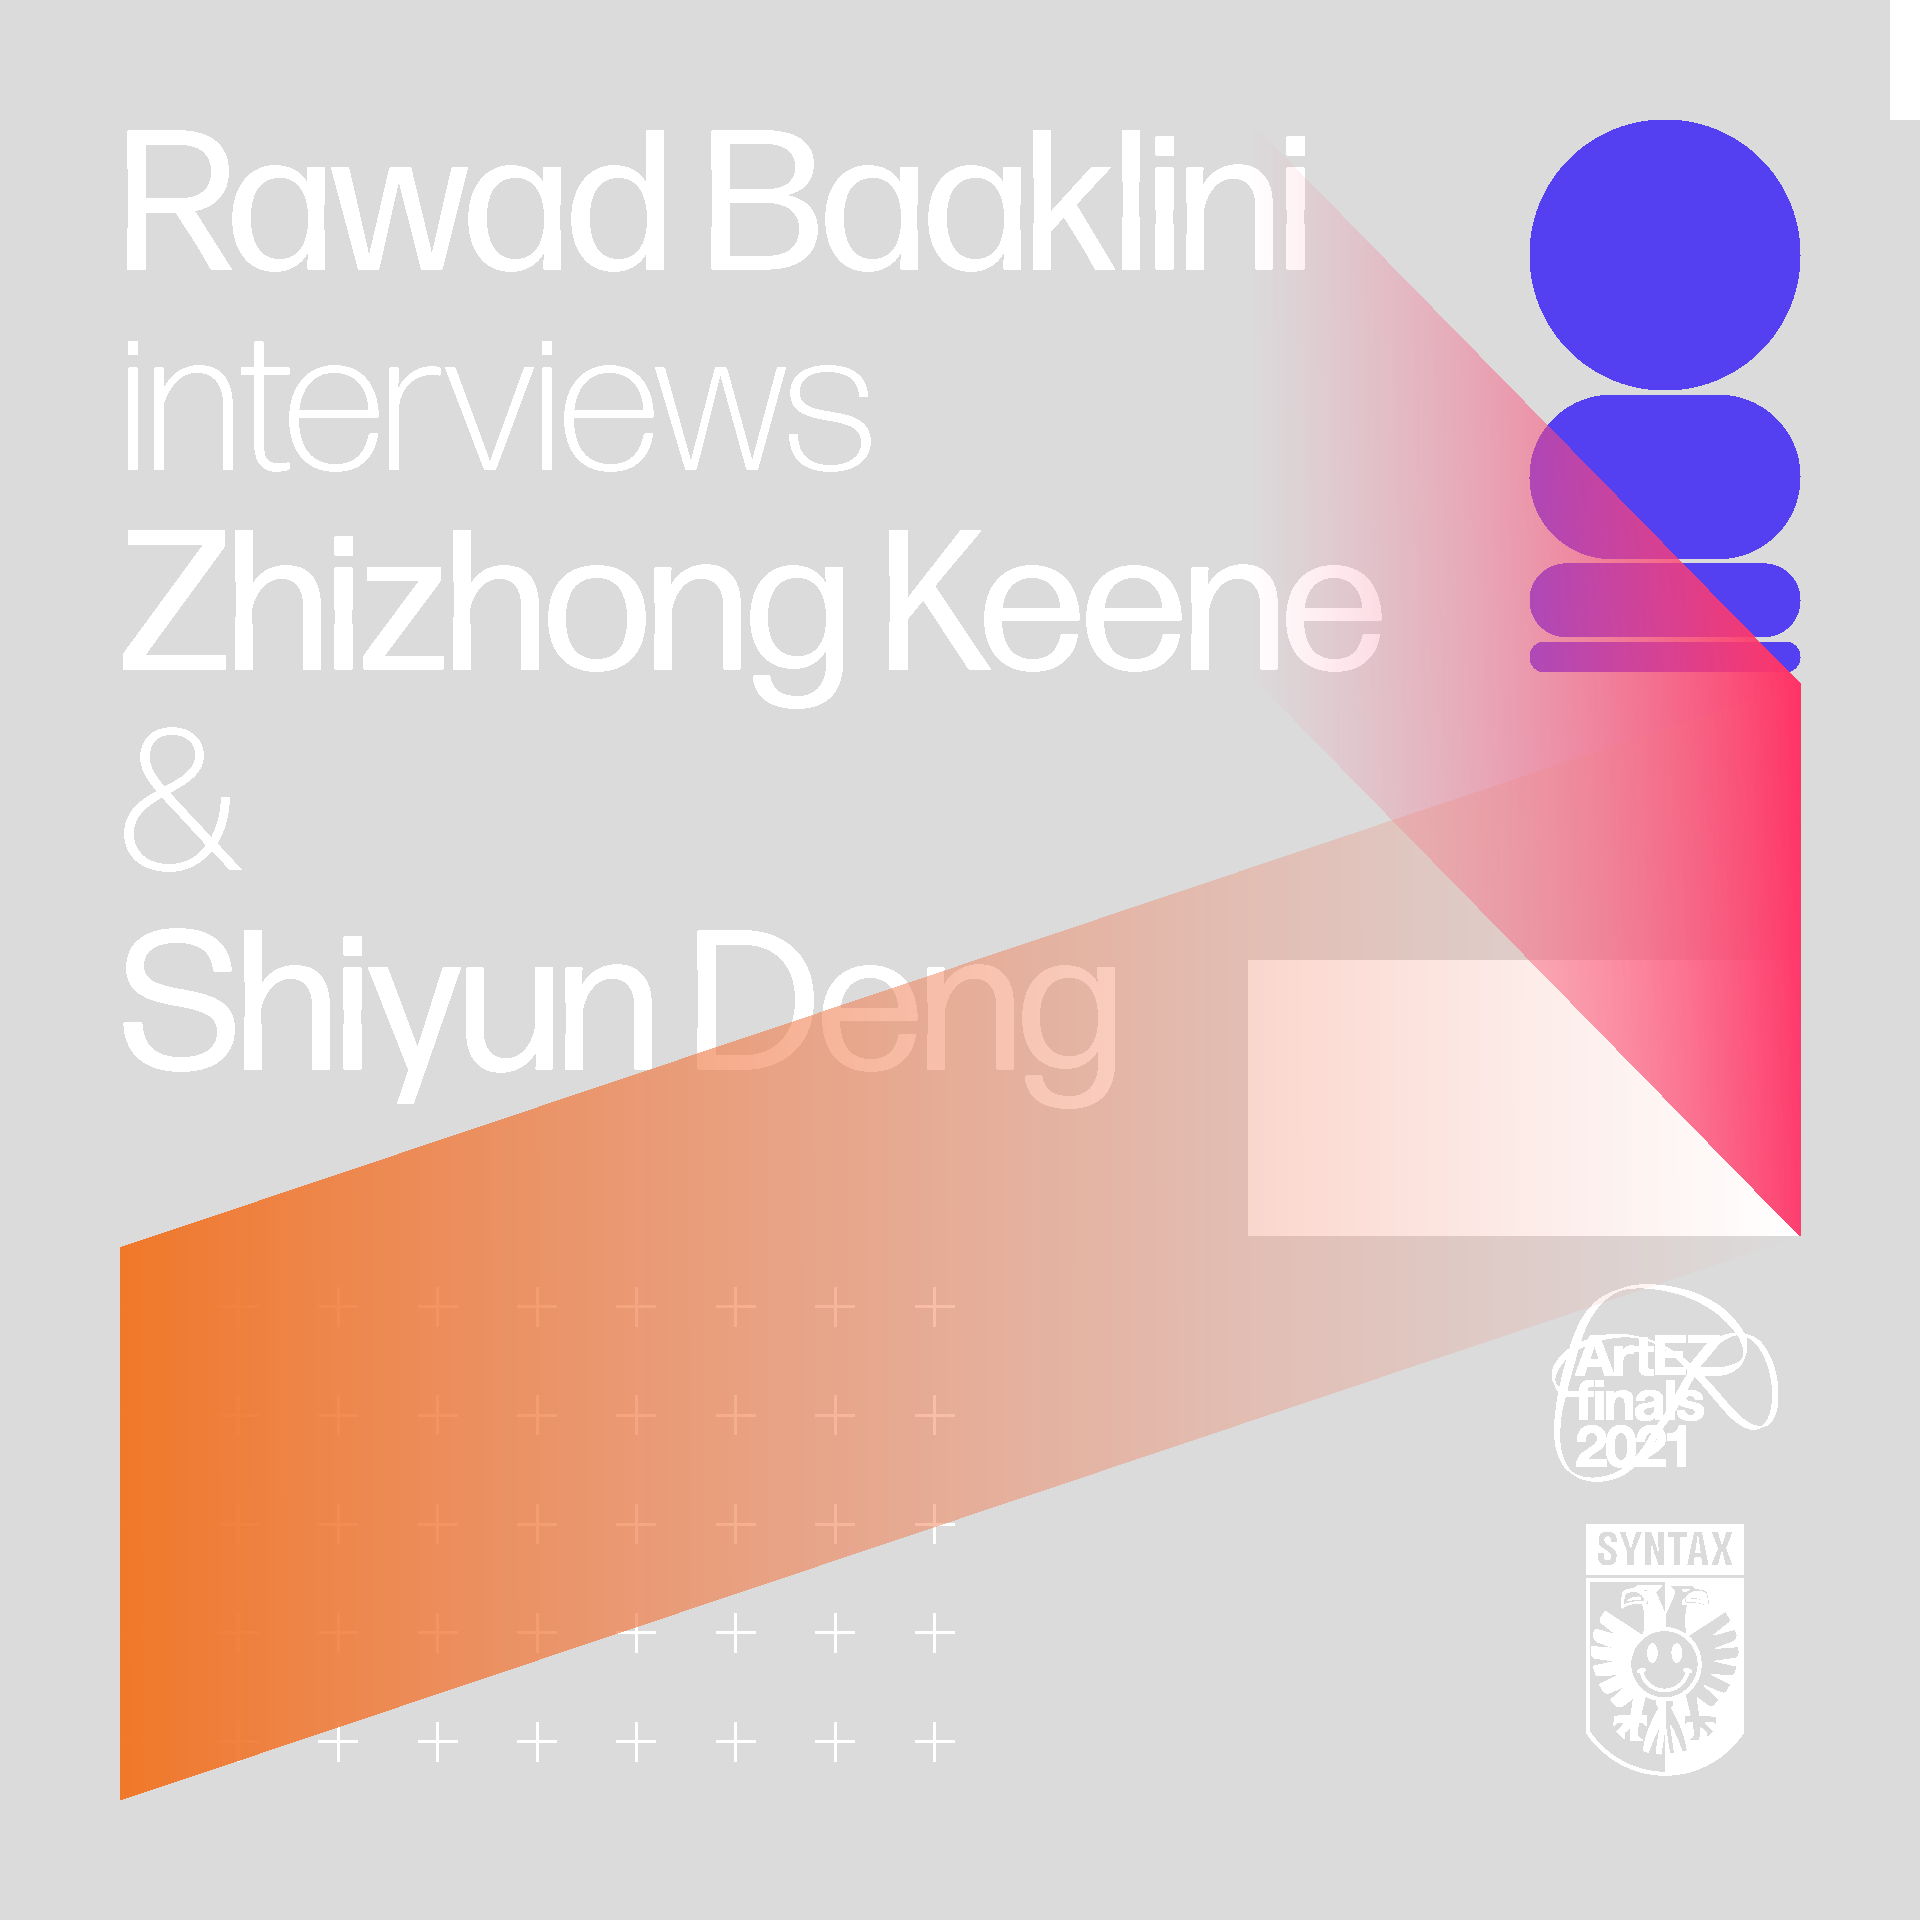 Rawad Baaklini interviews Zhizhong Keene & Shiyun Deng